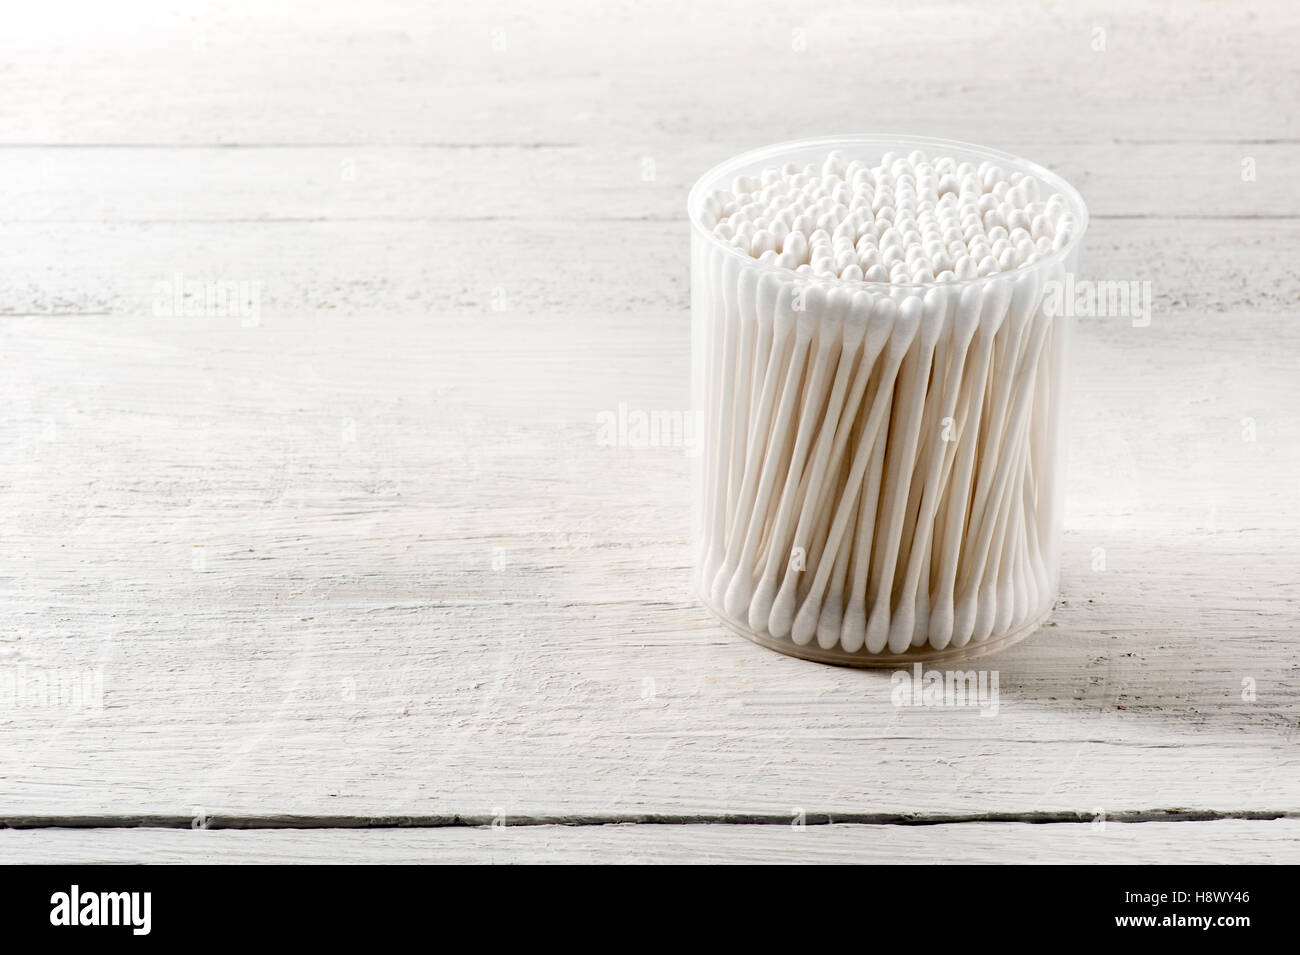 Zylindrische Kunststoffbehälter von sauberen weißen Wattestäbchen in ein Gesundheits- und Hygiene-Konzept auf eine hölzerne Tafel Stockfoto